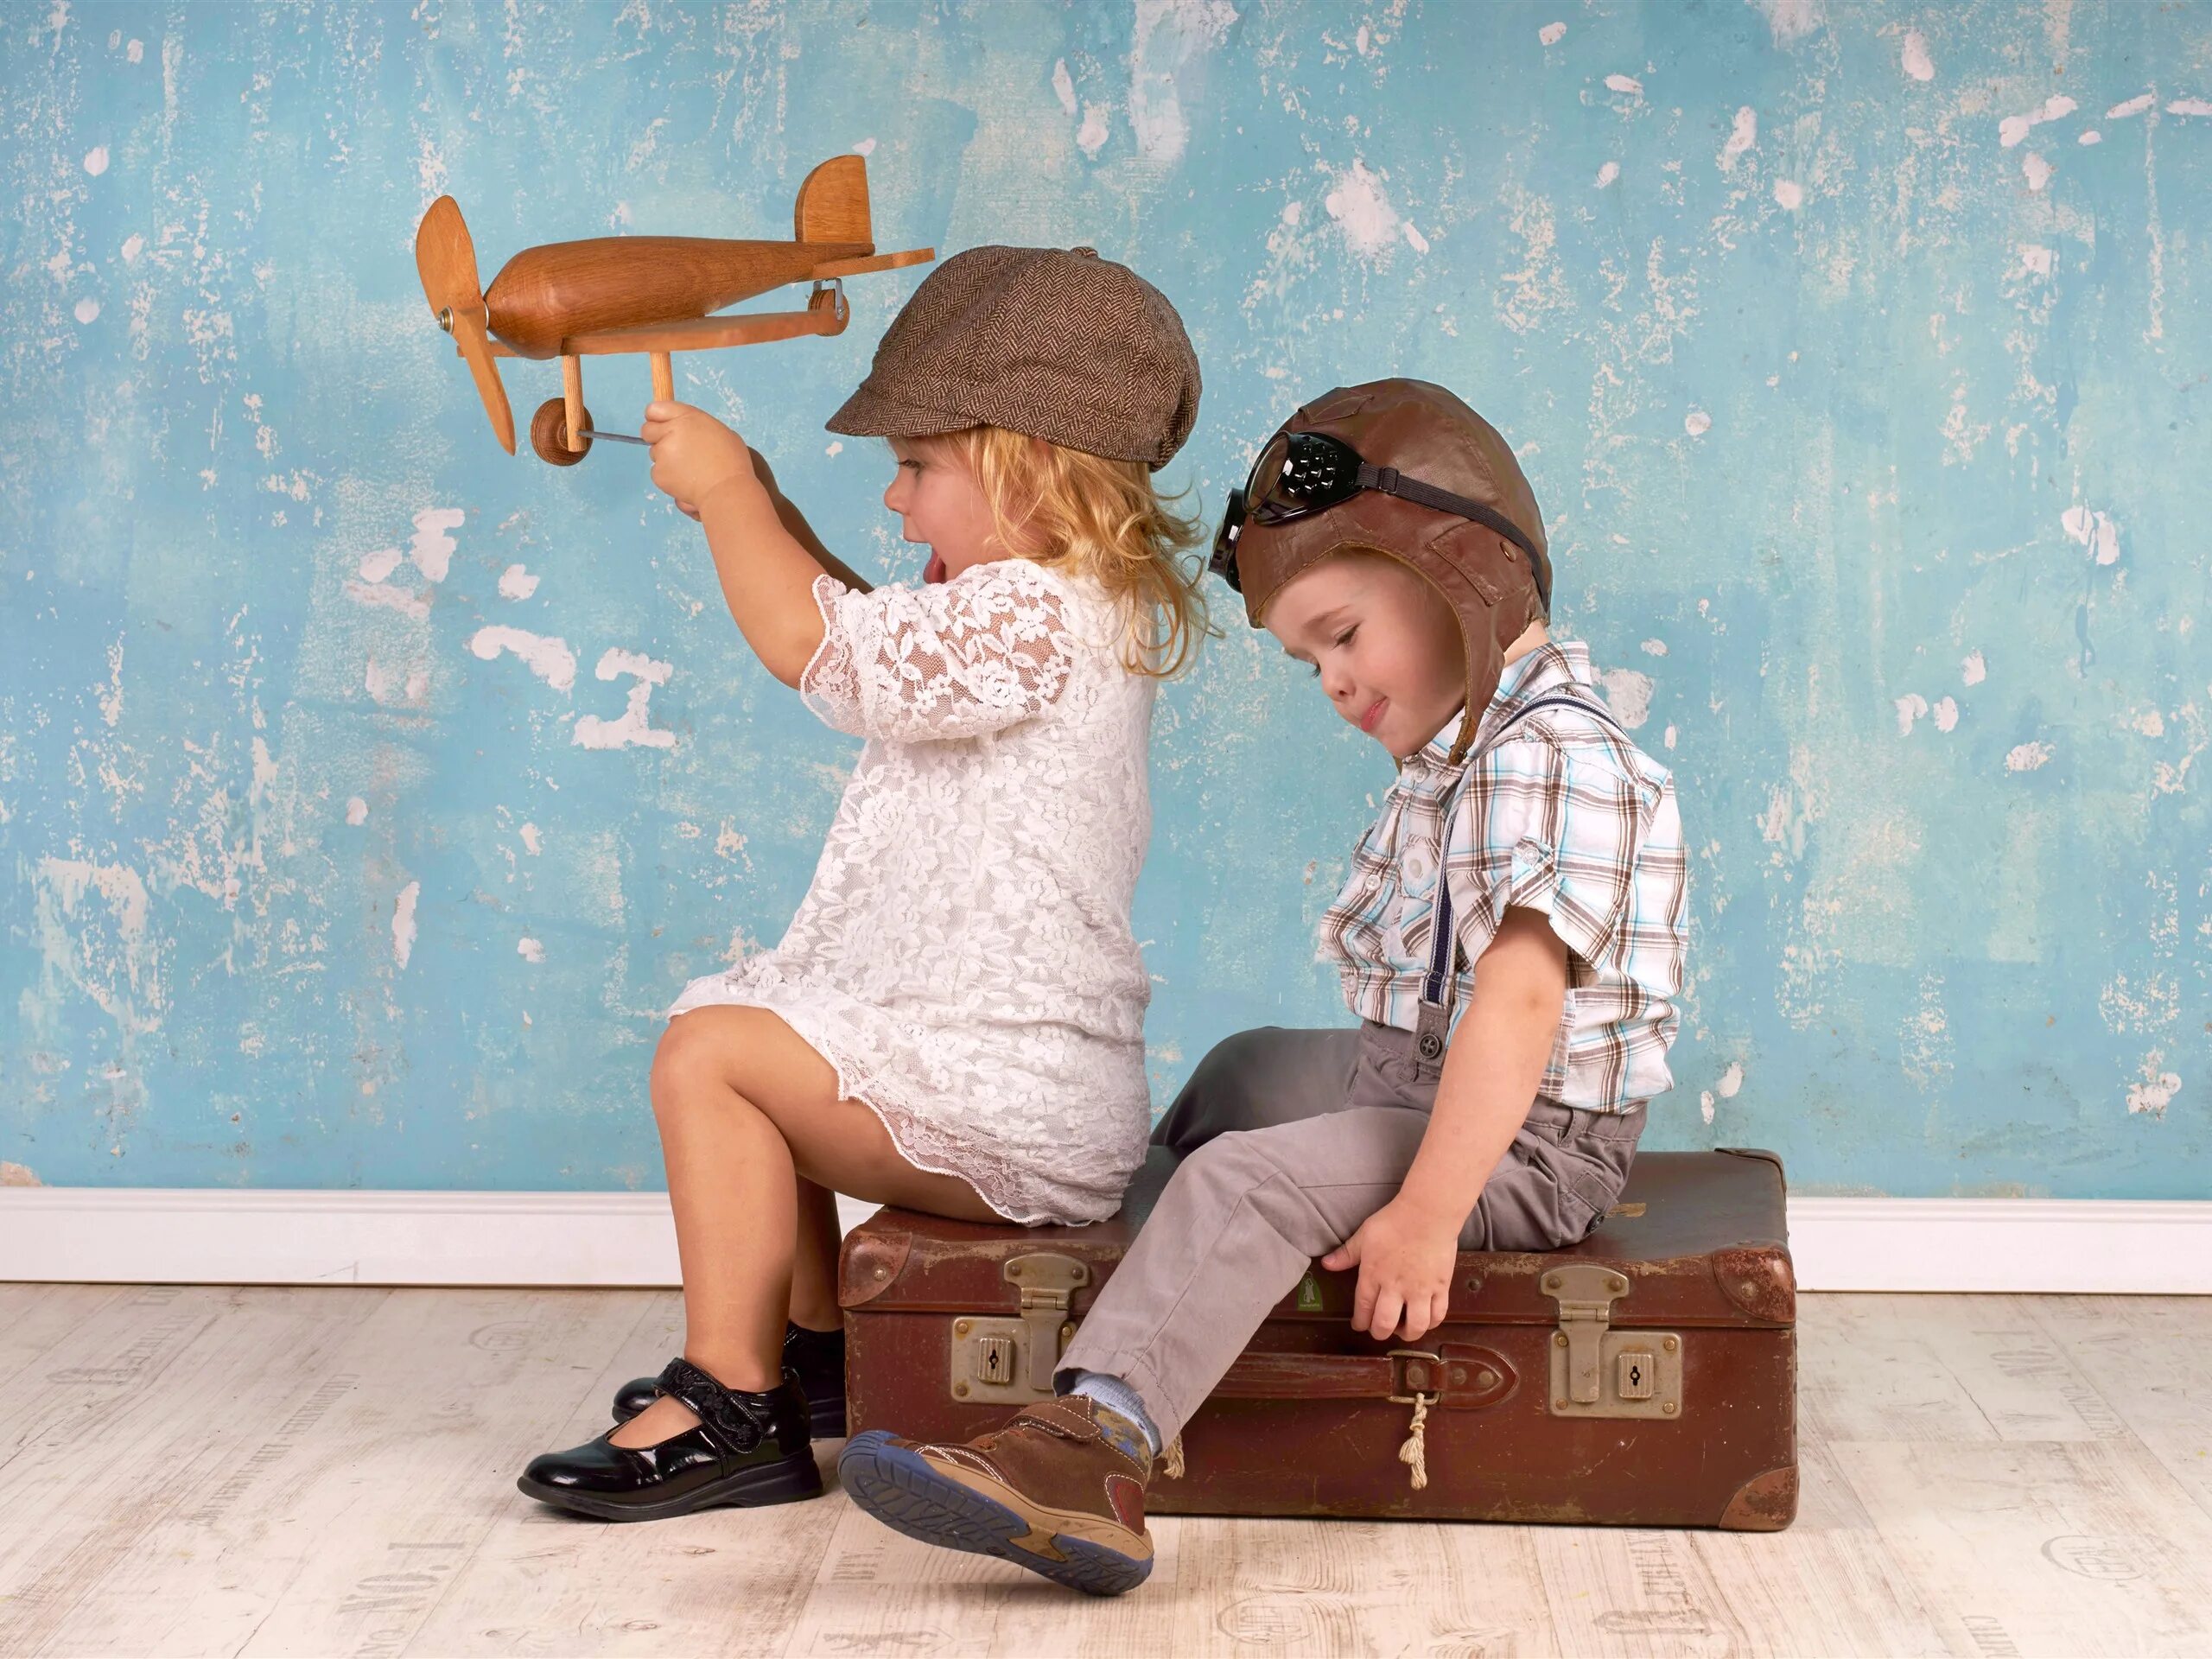 3 мальчика играло или играли. Мальчишки играют. Фотосессия с чемоданом дети. Мальчик и девочка с чемоданами.